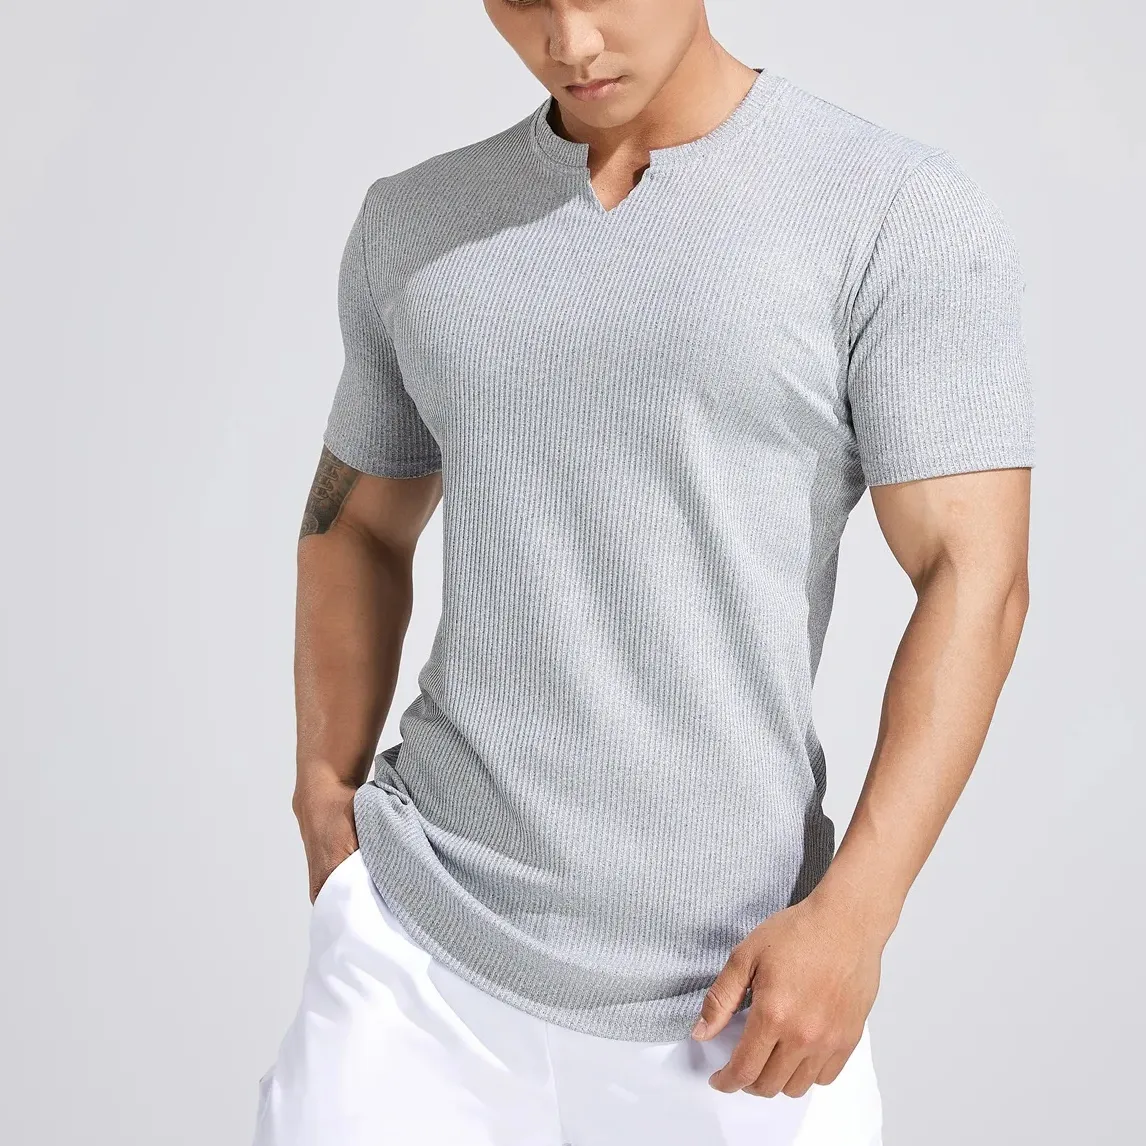 AOLA Apertado Relaxe Fit Super Macio Plus Size T-shirts Manga Curta Em Branco T Shirt para Homens